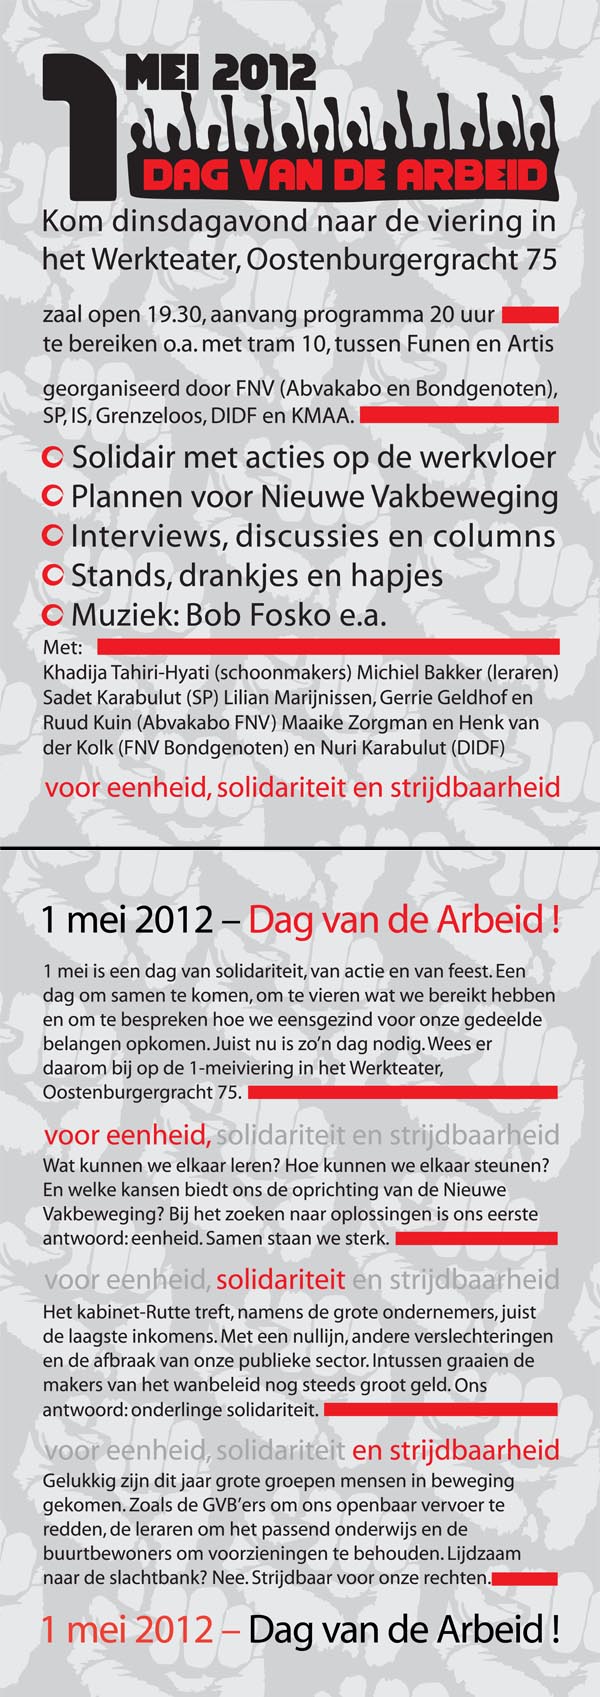 Flyer 1 mei-viering 2012 in Amsterdam, georganiseerd door FNV Bondgenoten en Abvakabo, SP, DIDF, IS, KMAA, Grenzeloos